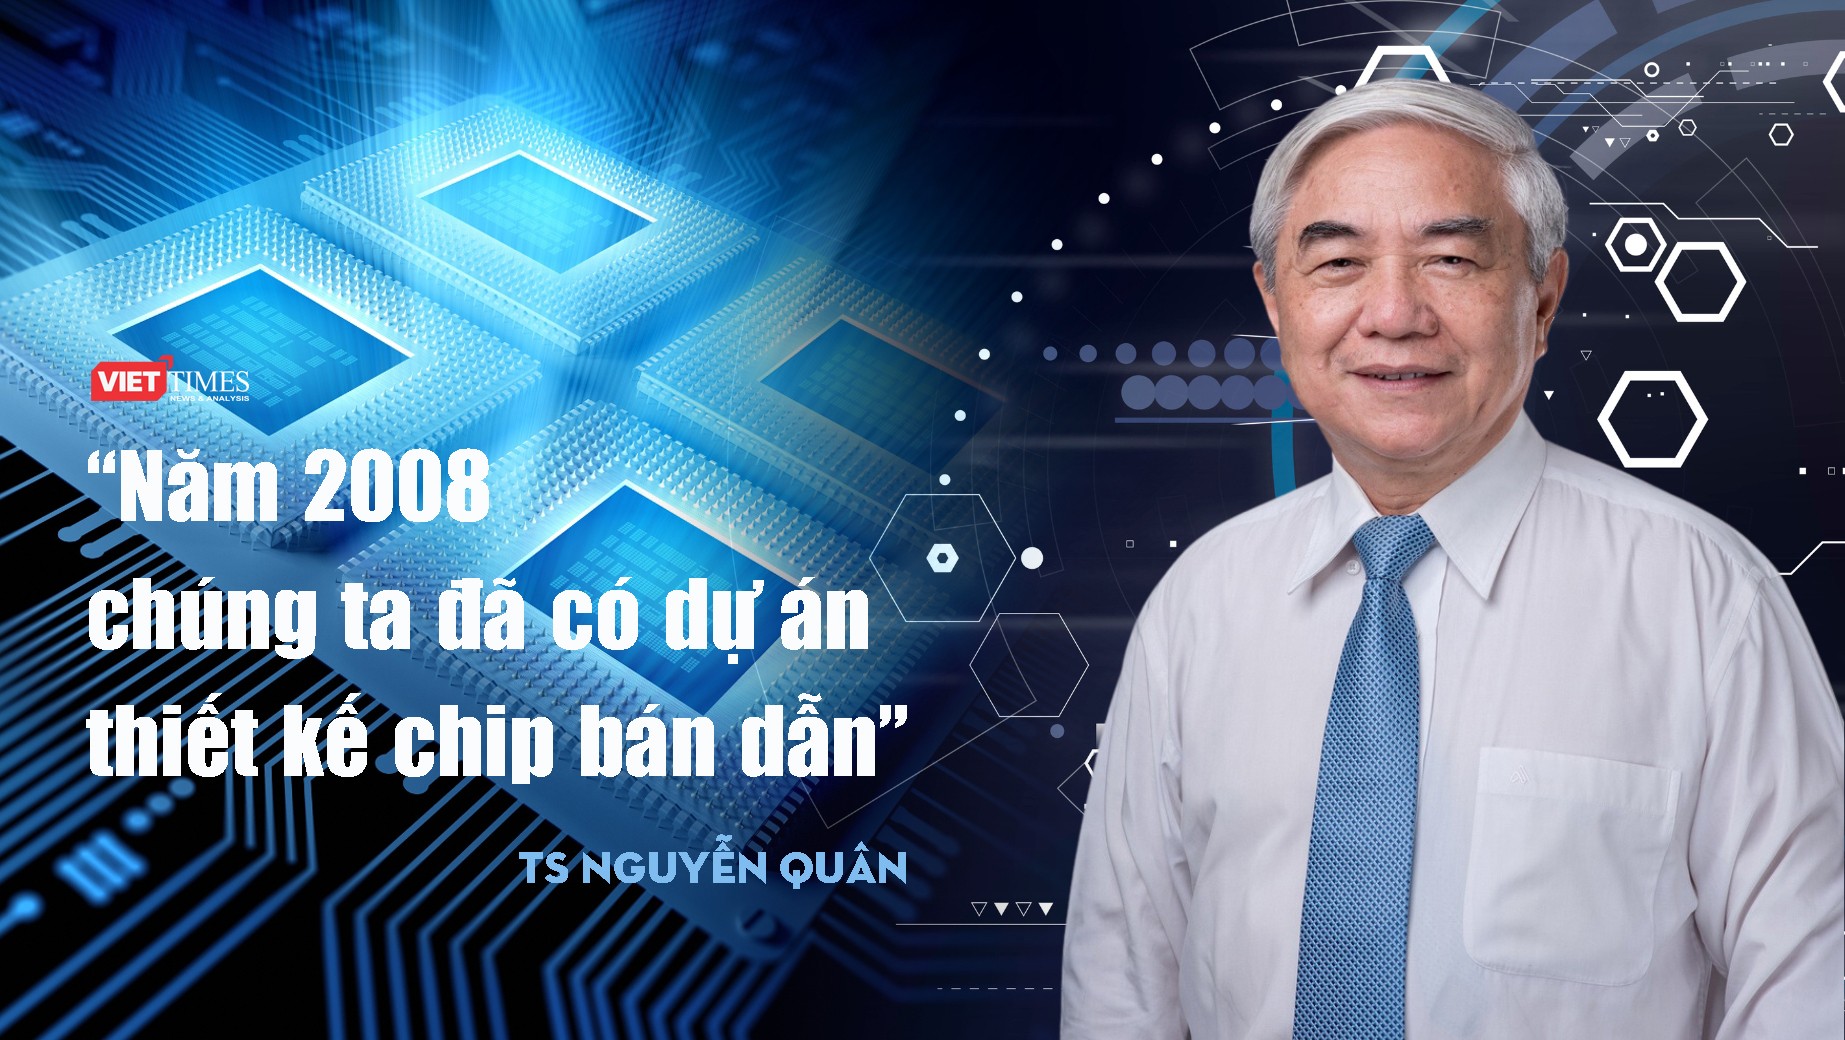 TS. Nguyễn Quân: "Năm 2008, chúng ta đã có dự án thiết kế chip"